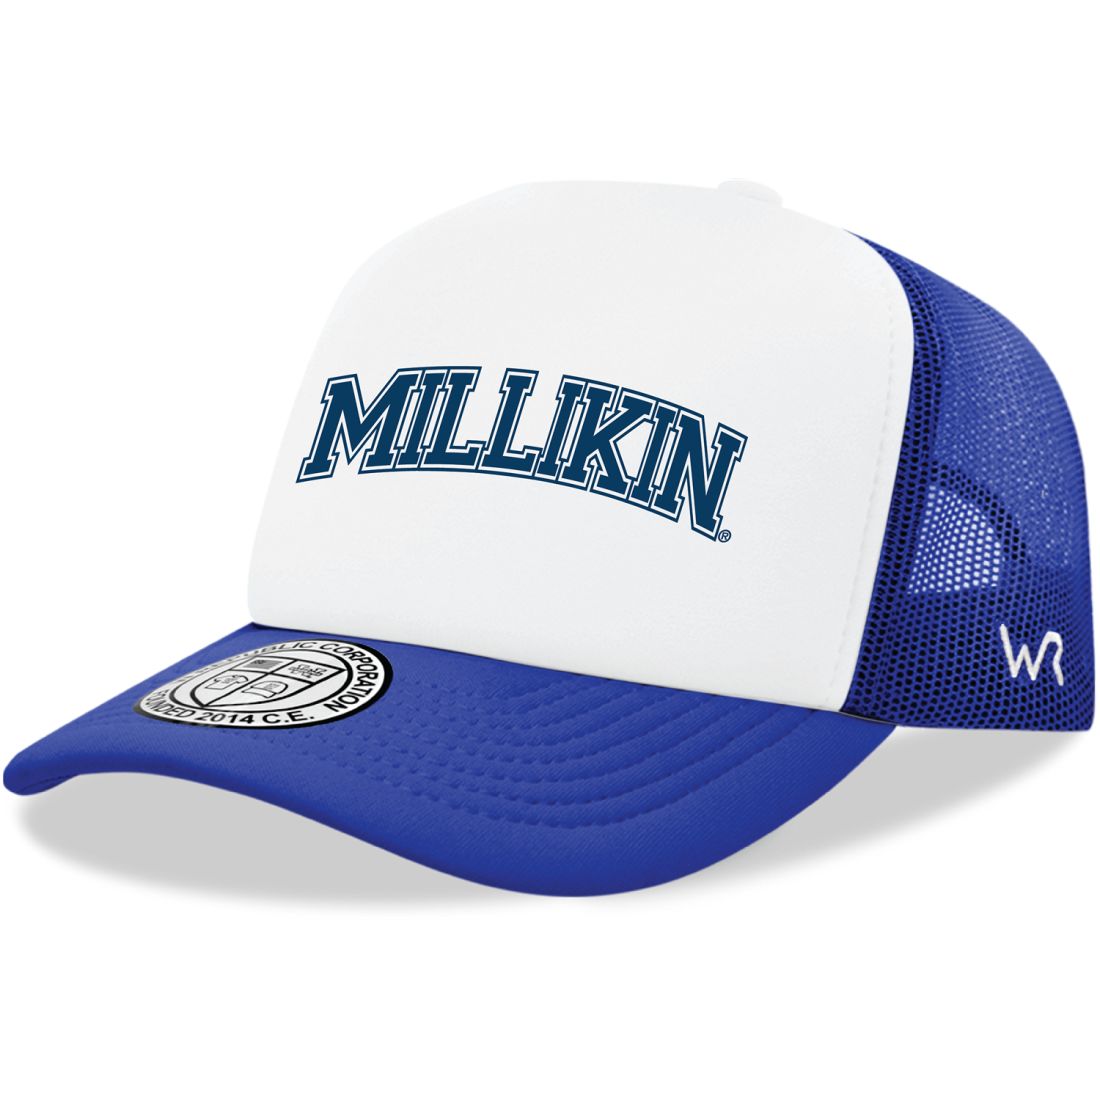 Millikin University Big Blue Practice Foam Trucker Hats